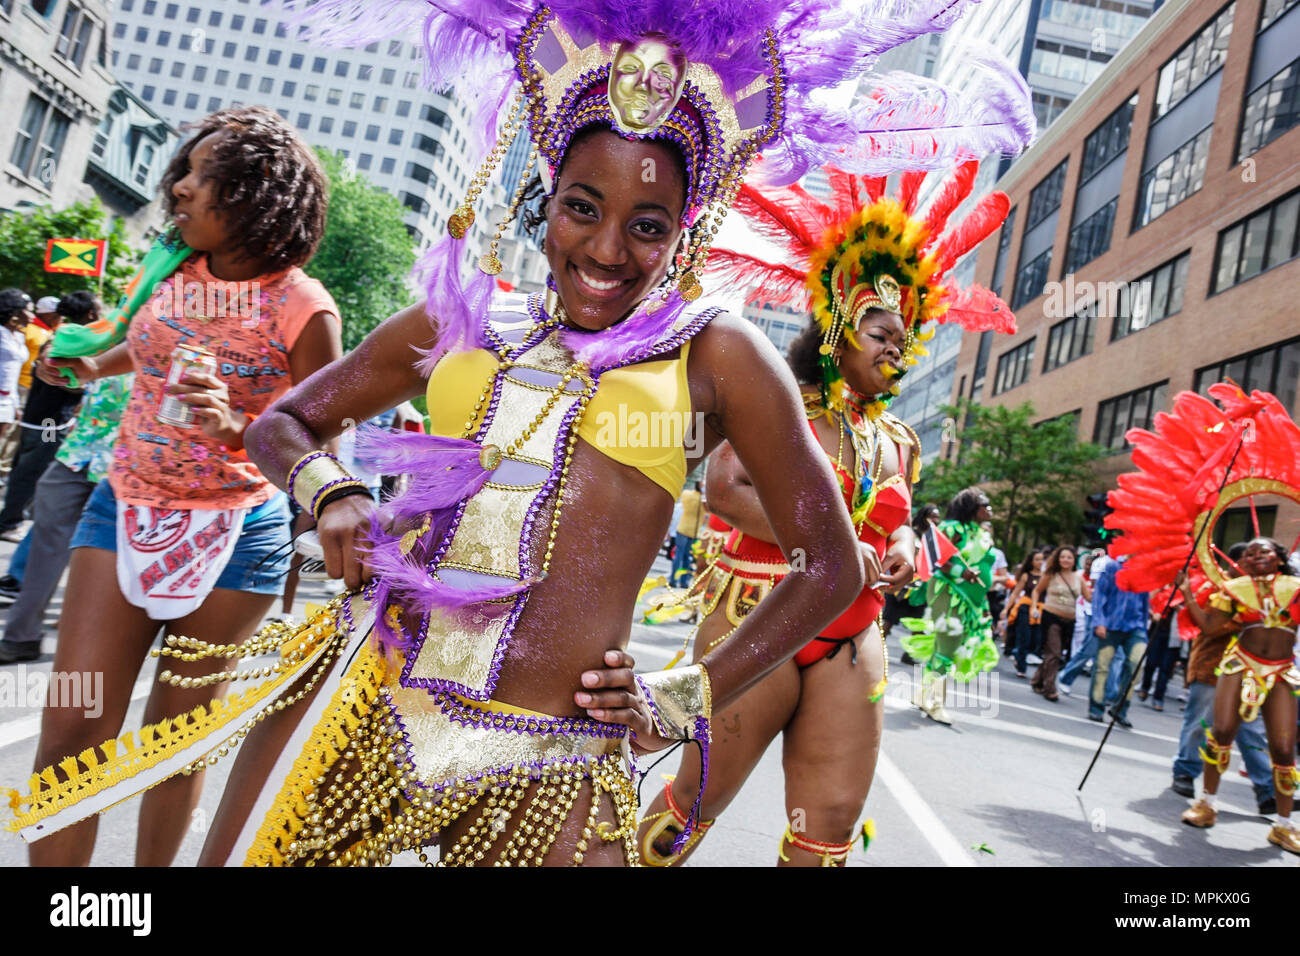 Montreal Kanada, Provinz Quebec, Boulevard Rene Levesque, Carifiesta, karibische Parade im Mardi Gras-Stil, Kostüm, lächelnder schwarzer Teenager, Teenager, gir Stockfoto